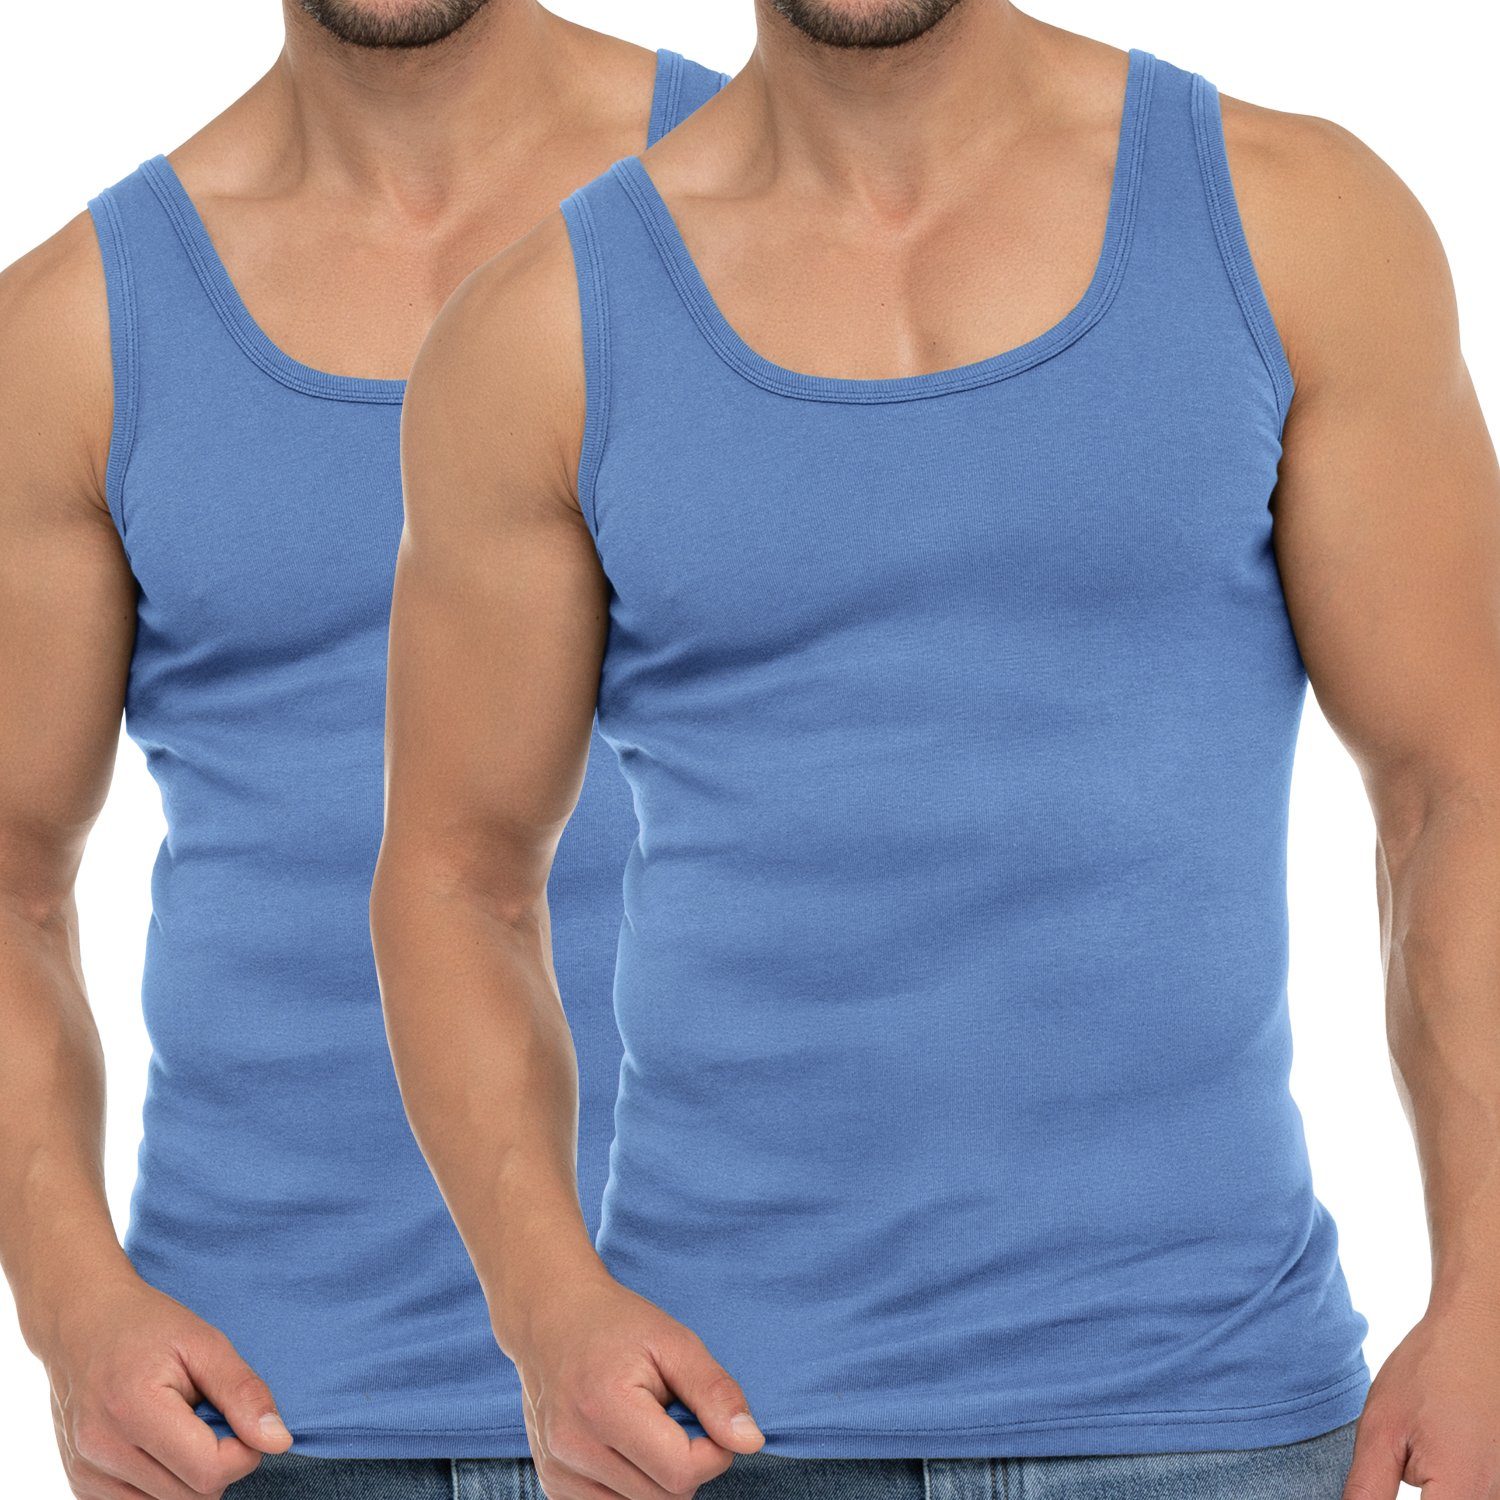 celodoro Unterhemd Herren Business Tank Top Achselhemd aus Baumwolle 2 x Carolina Blue